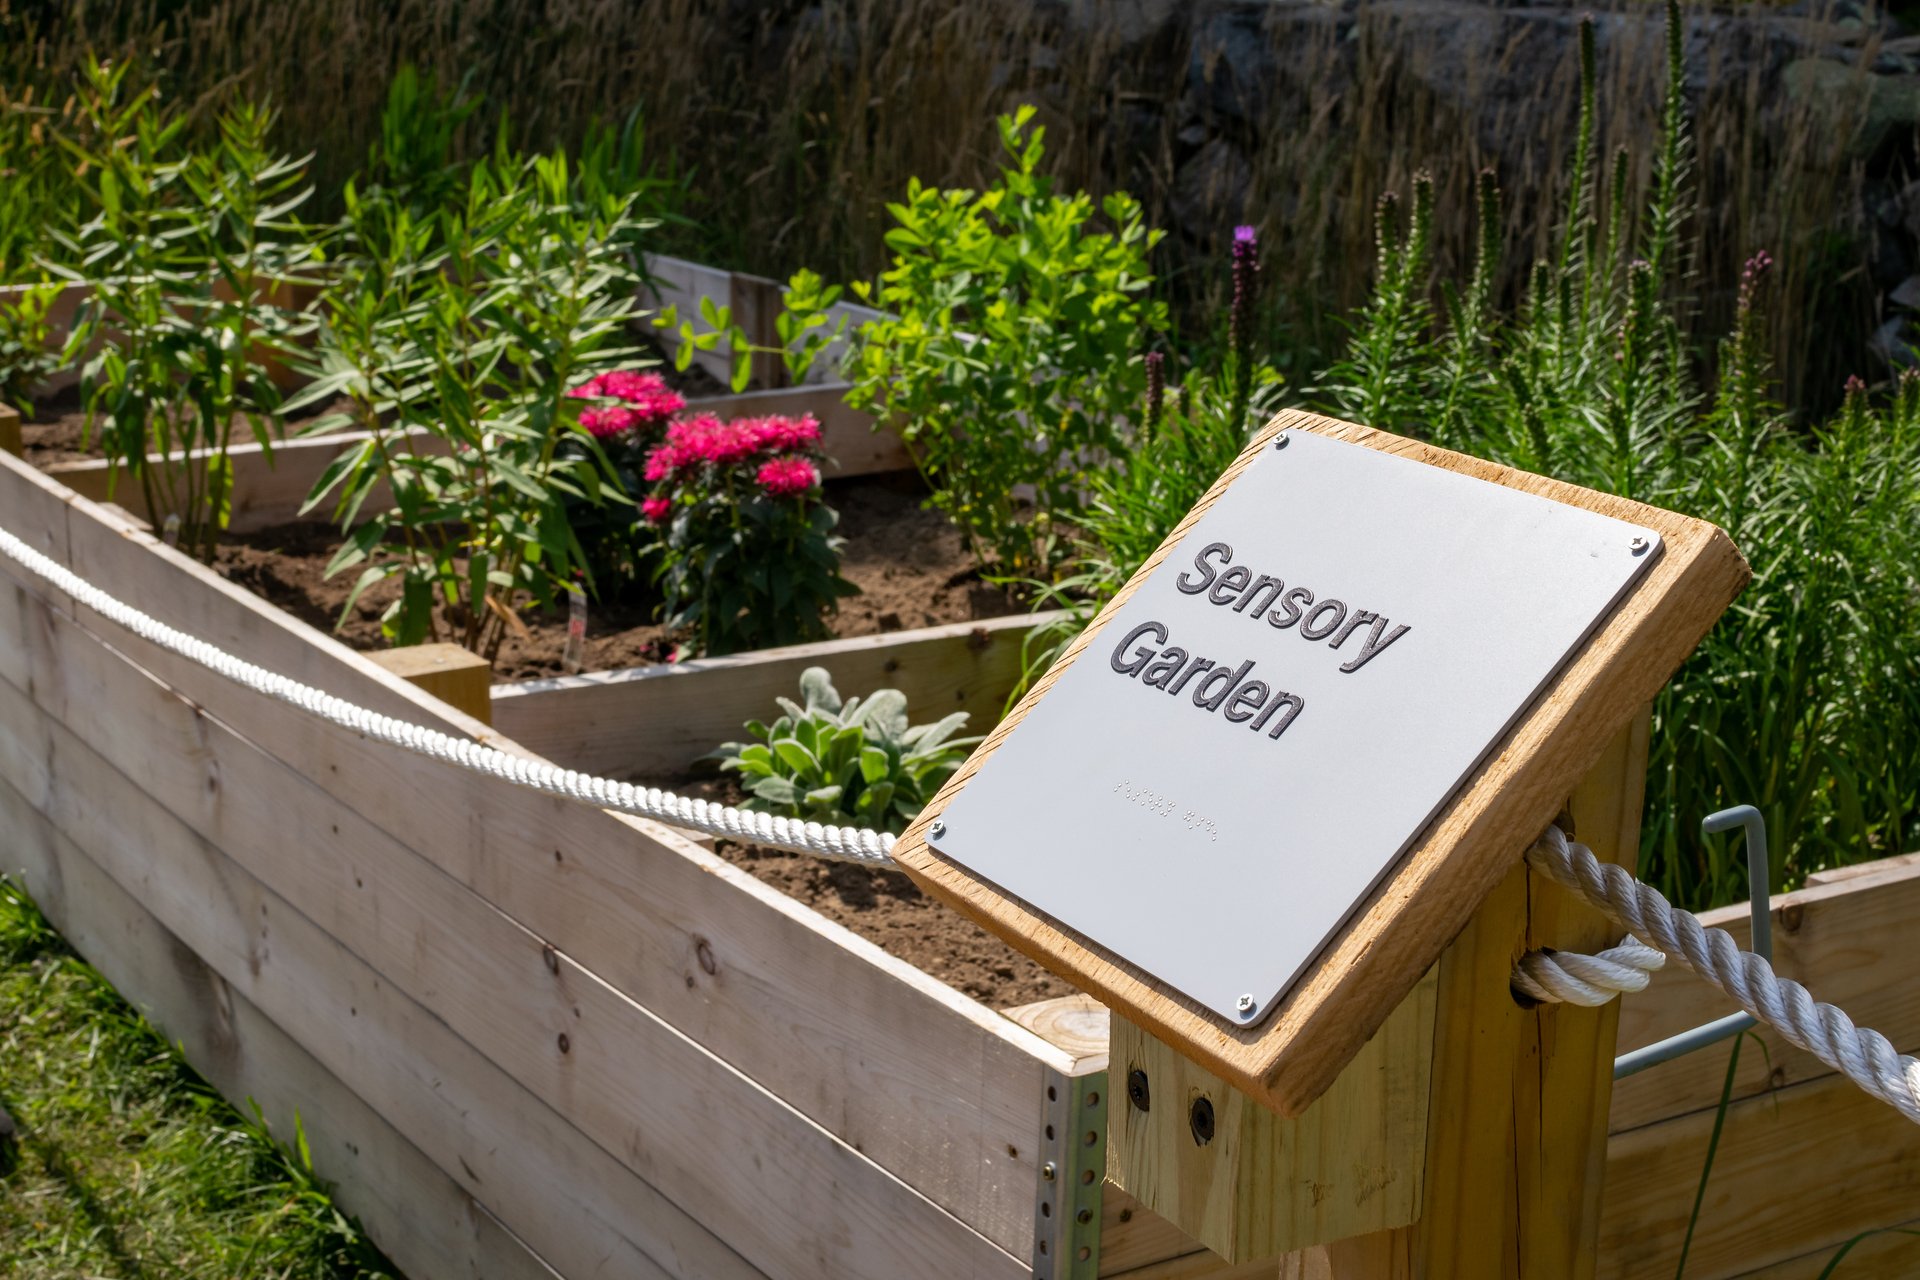 sensory garden sign and garden